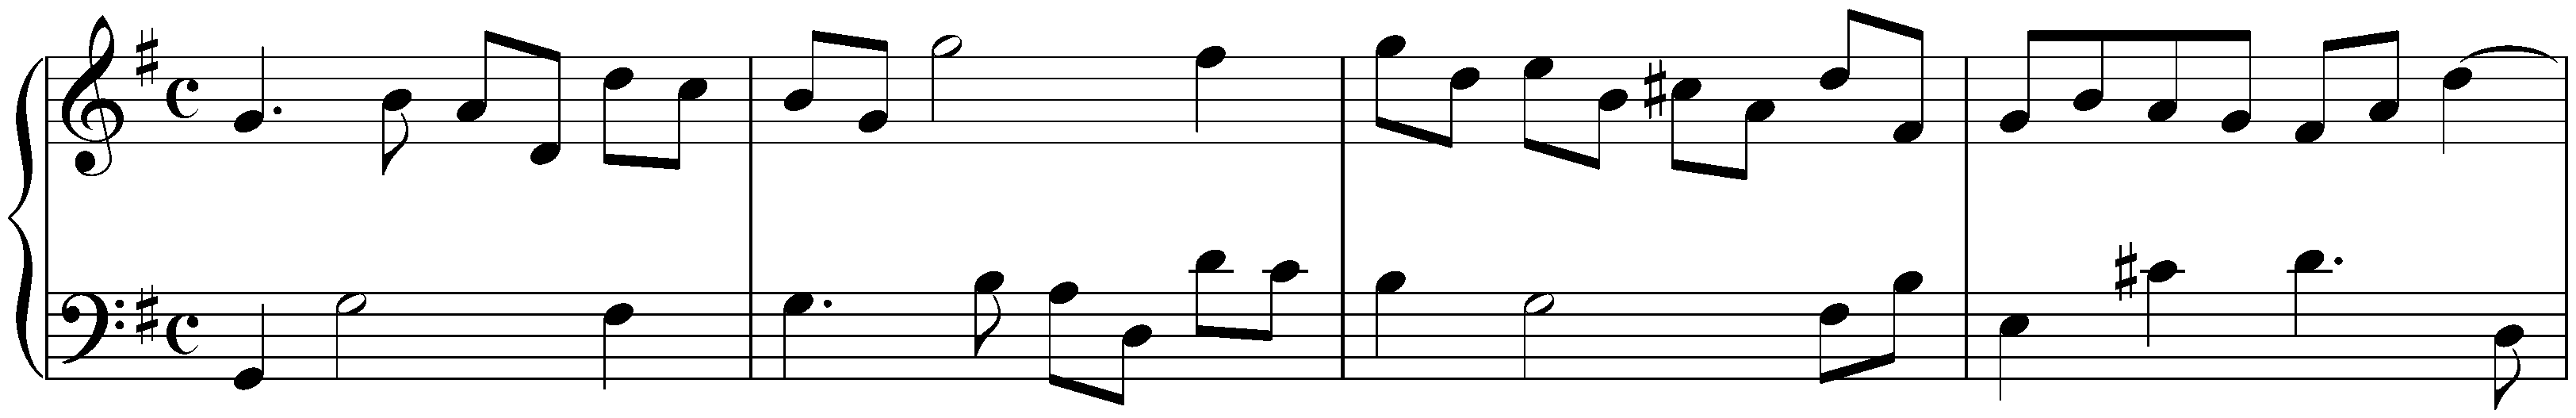 Sonatina in G major, HWV 582